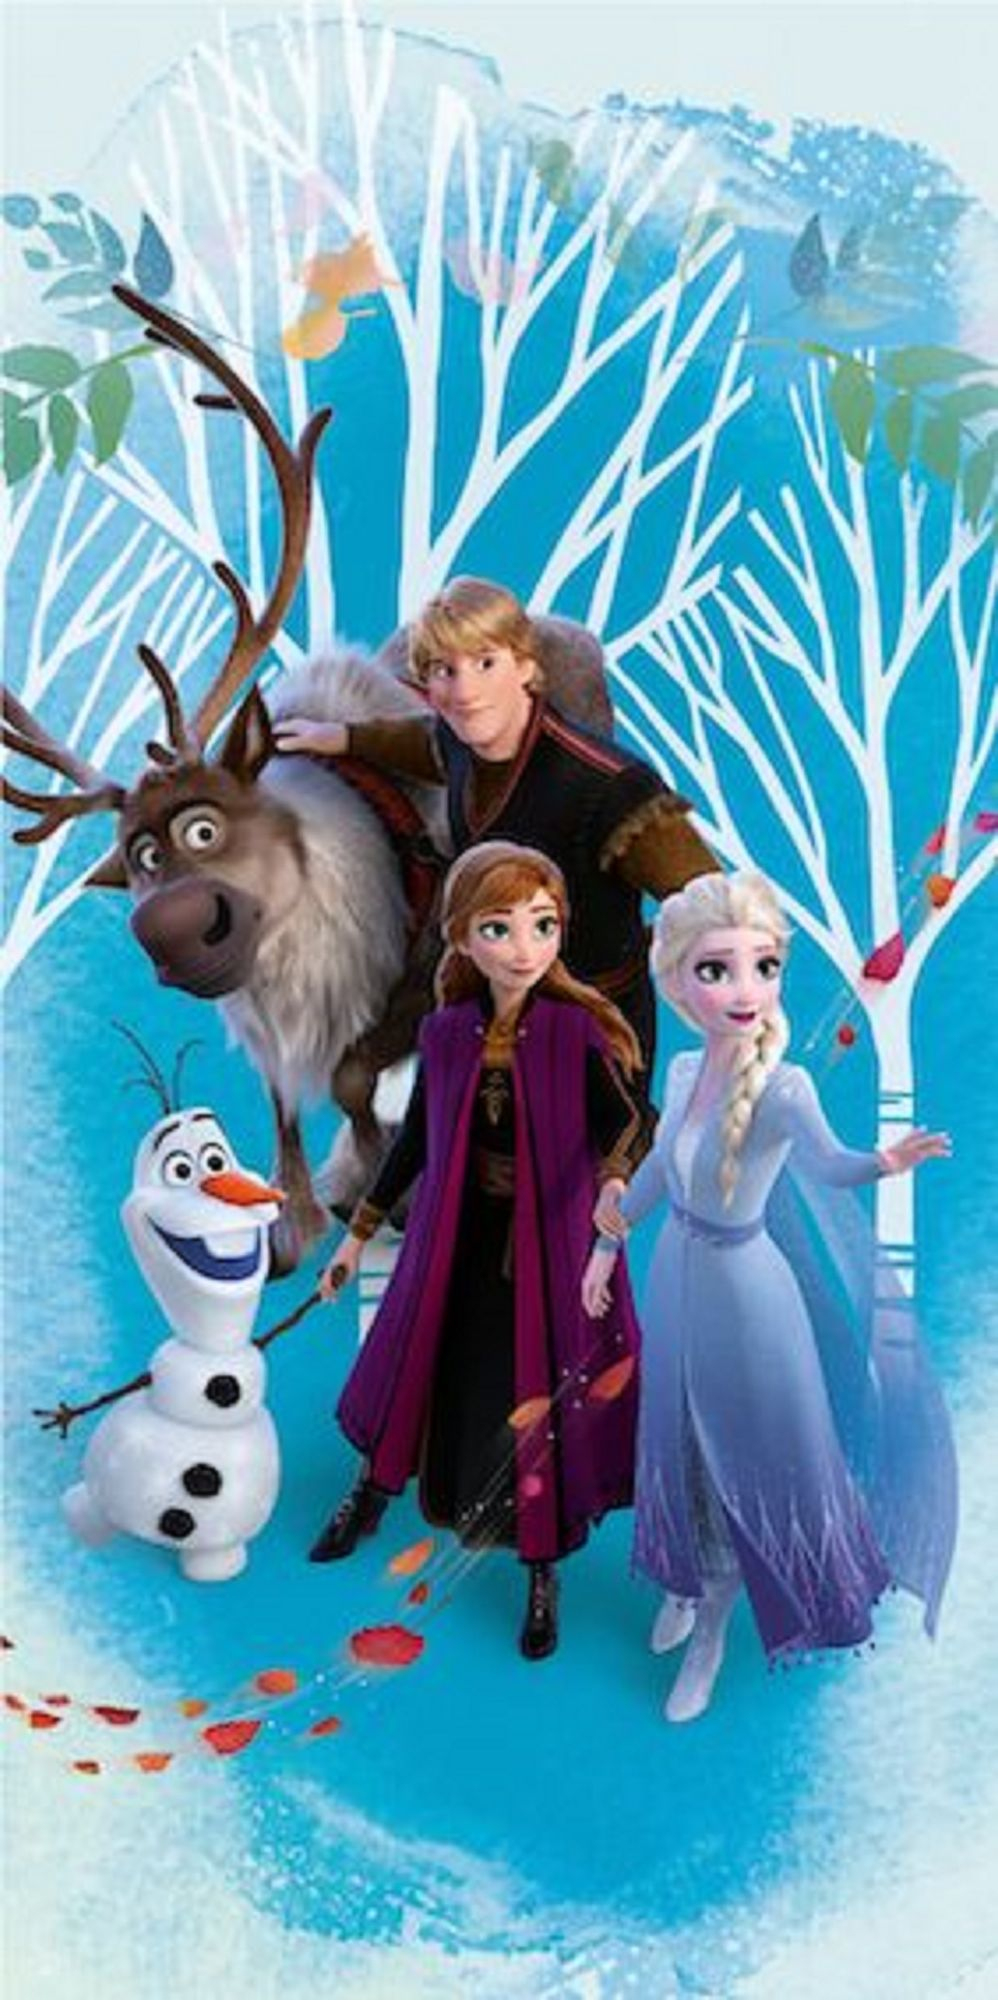 Eiskönigin Anna Elsa Olaf Frozen 2 Duschtuch Badetuch Handtuch 70 X 140Cm mit Anna Und Elsa Bilder